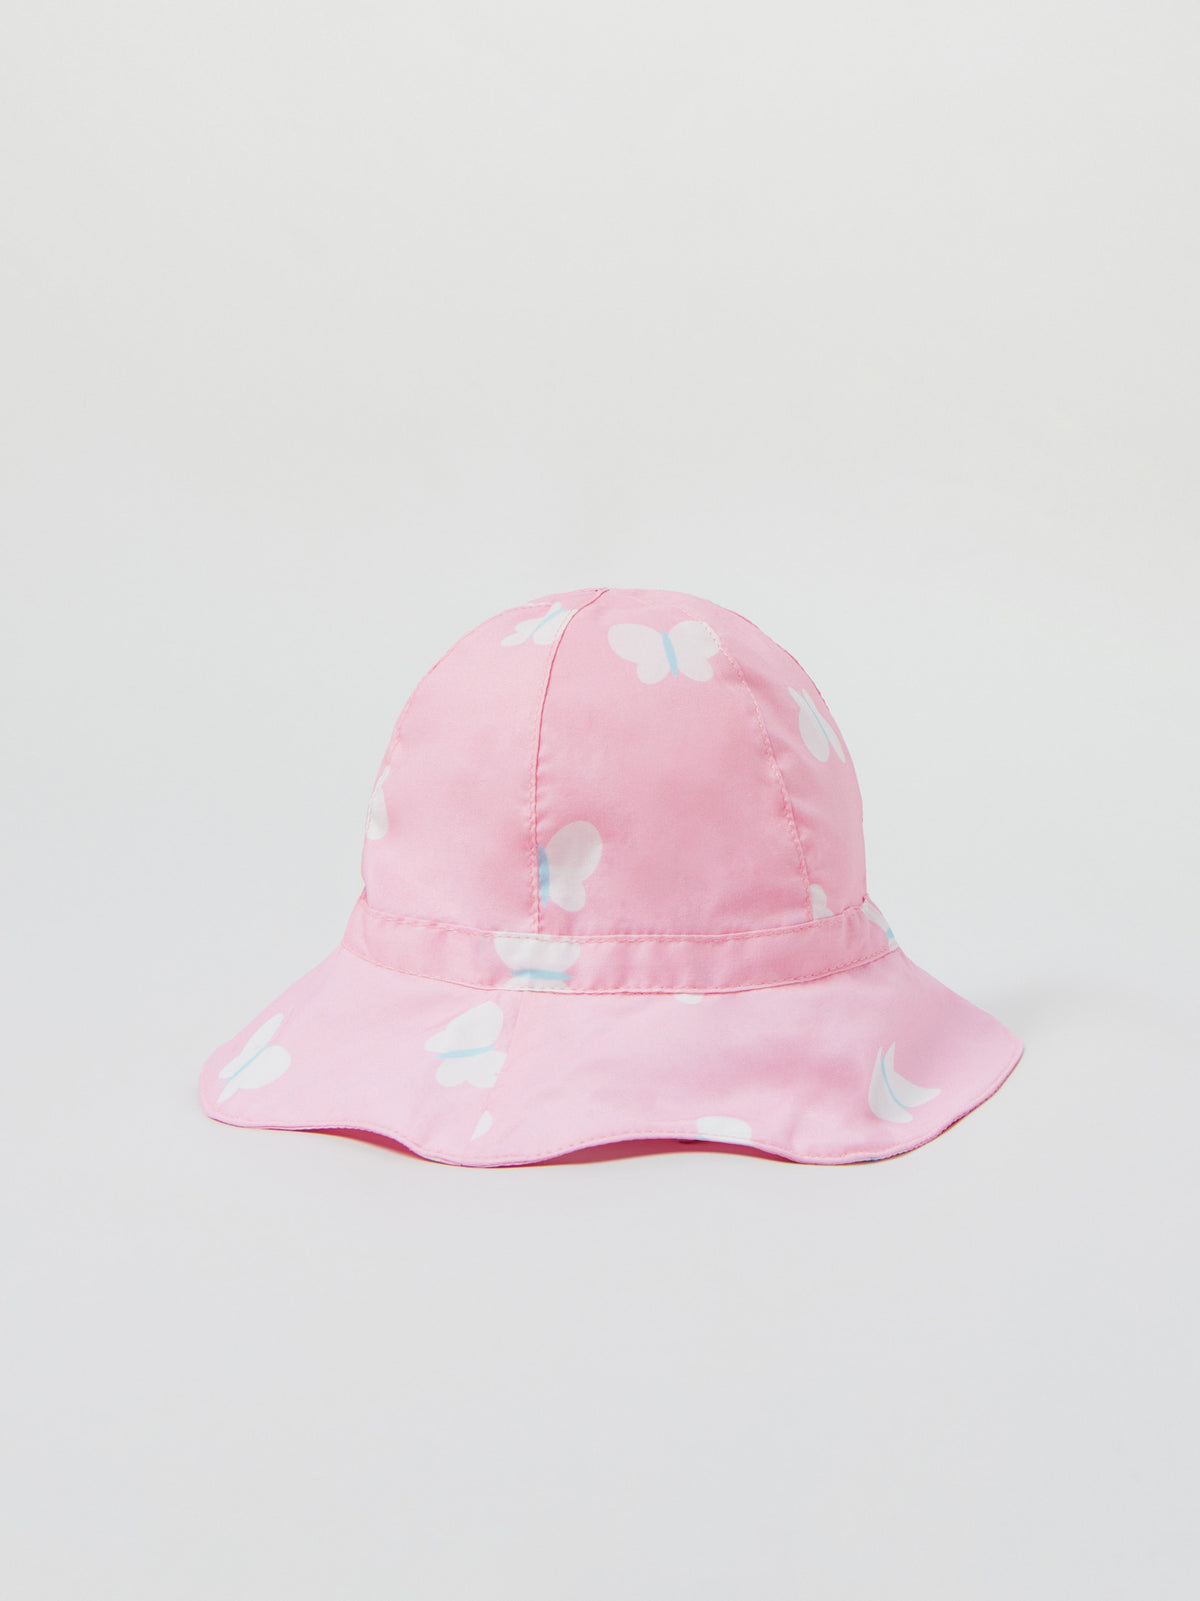 כובע רחב שוליים בהדפס פרפרים / תינוקות